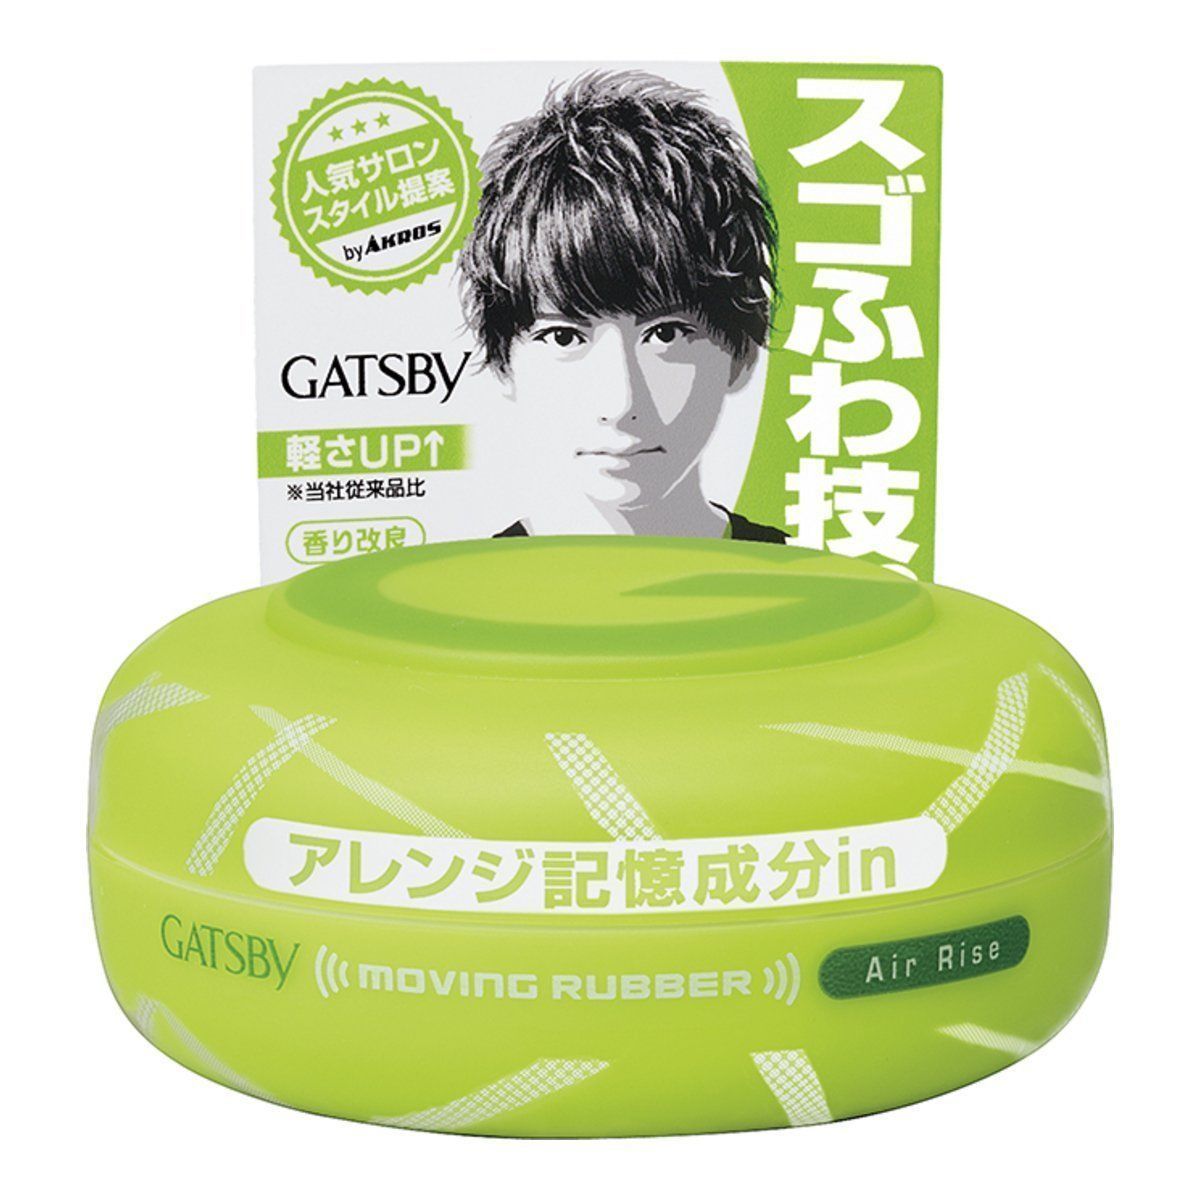 Mandom Gatsby Moving Rubber Hair Wax Air Rise 80g